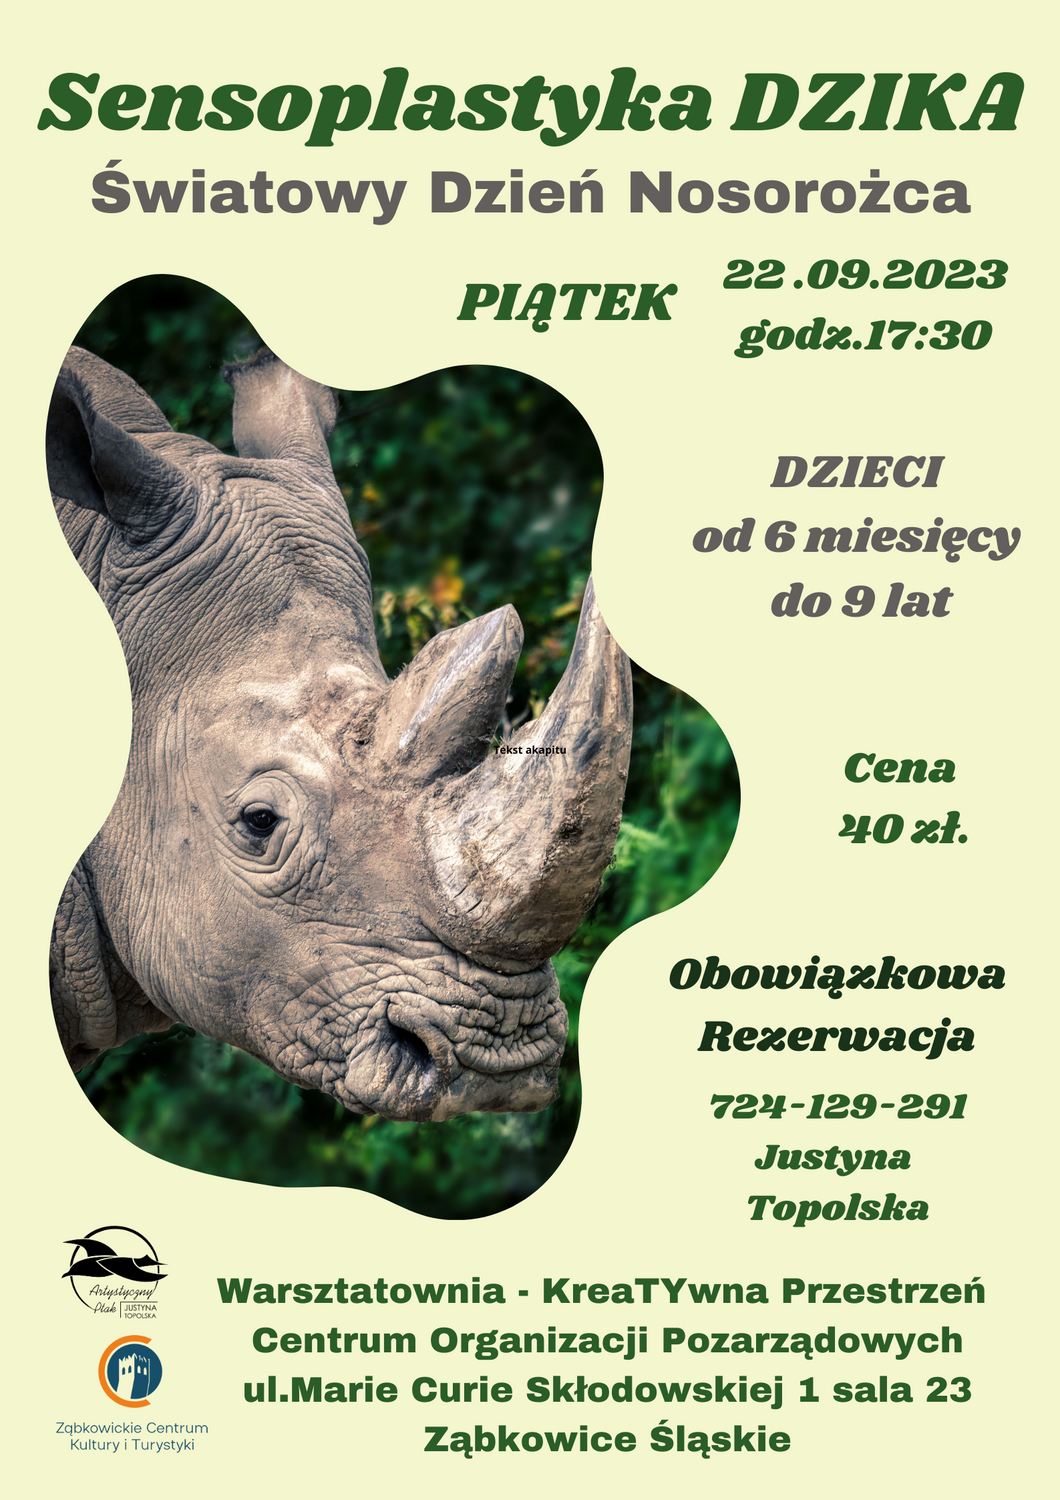 Plakat informacyjny o światowym Dniu Nosorożca organizowanym w centrum Organizacji Pozarządowych 22 września 2023 o godzinie 17:00. Na plakacie widnieje zdjęcie nosorożca.